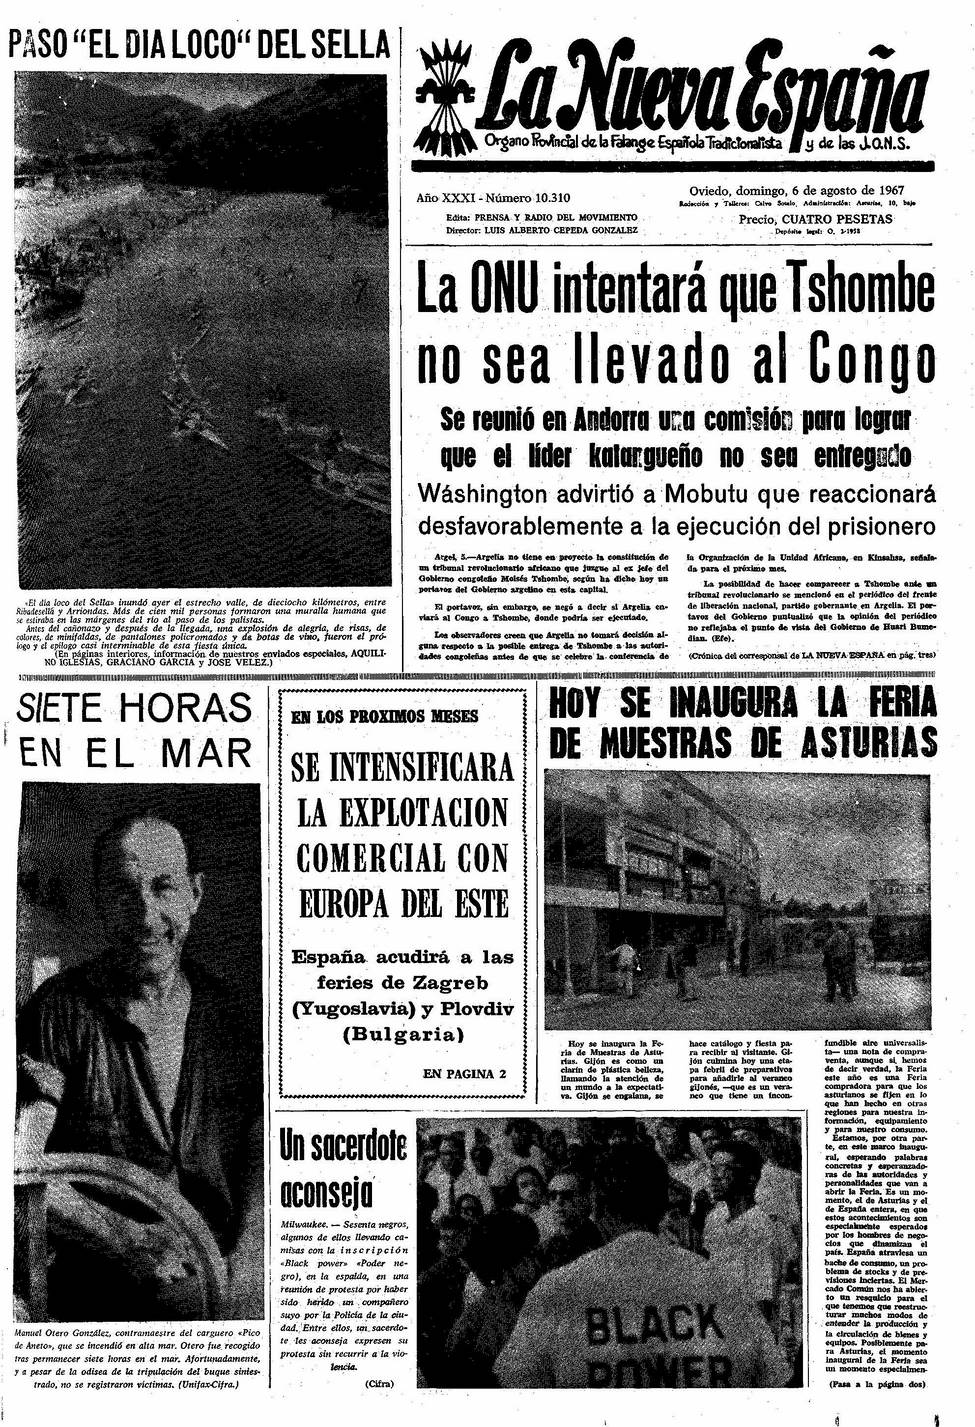 Portada del Domingo, 6 de Agosto de 1967